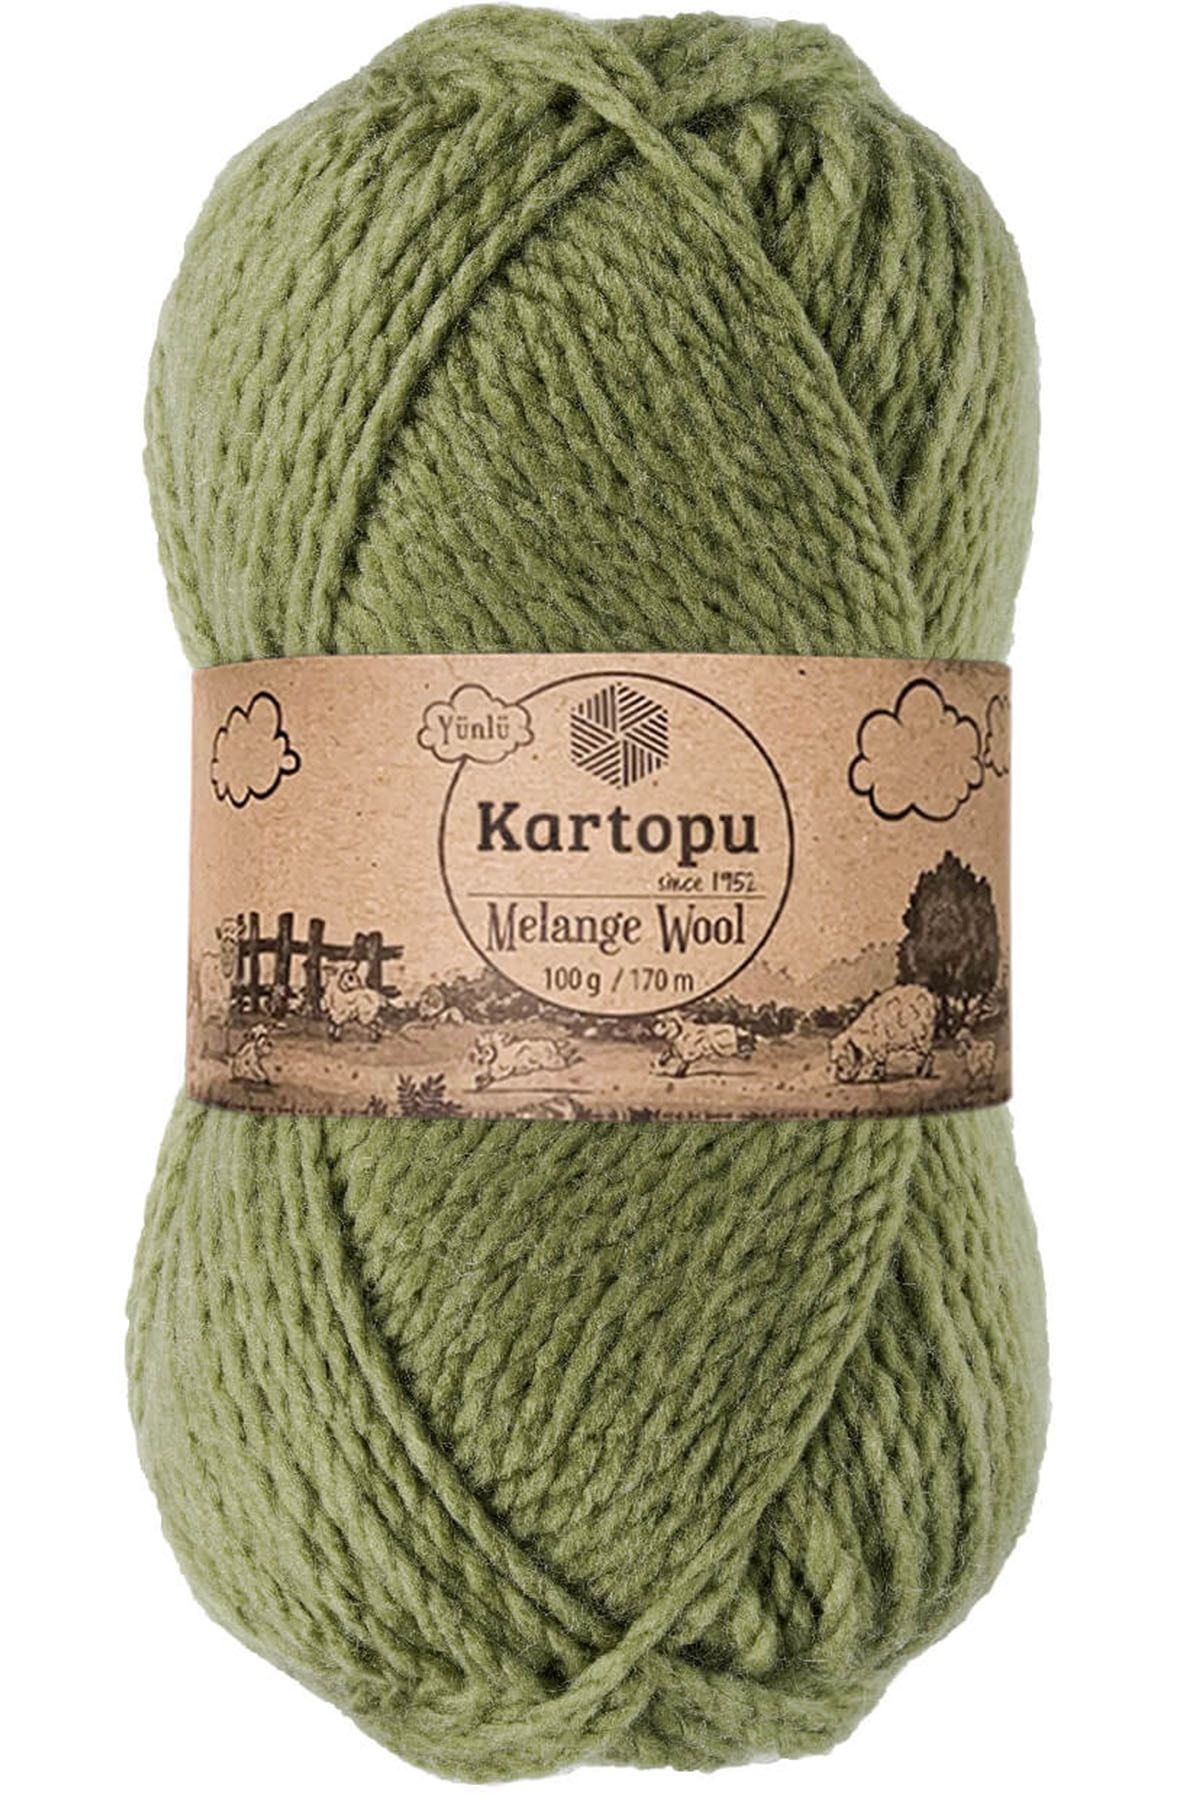 Kartopu Melange Wool Yünlü El Örgü Ipi K430 Yeşil